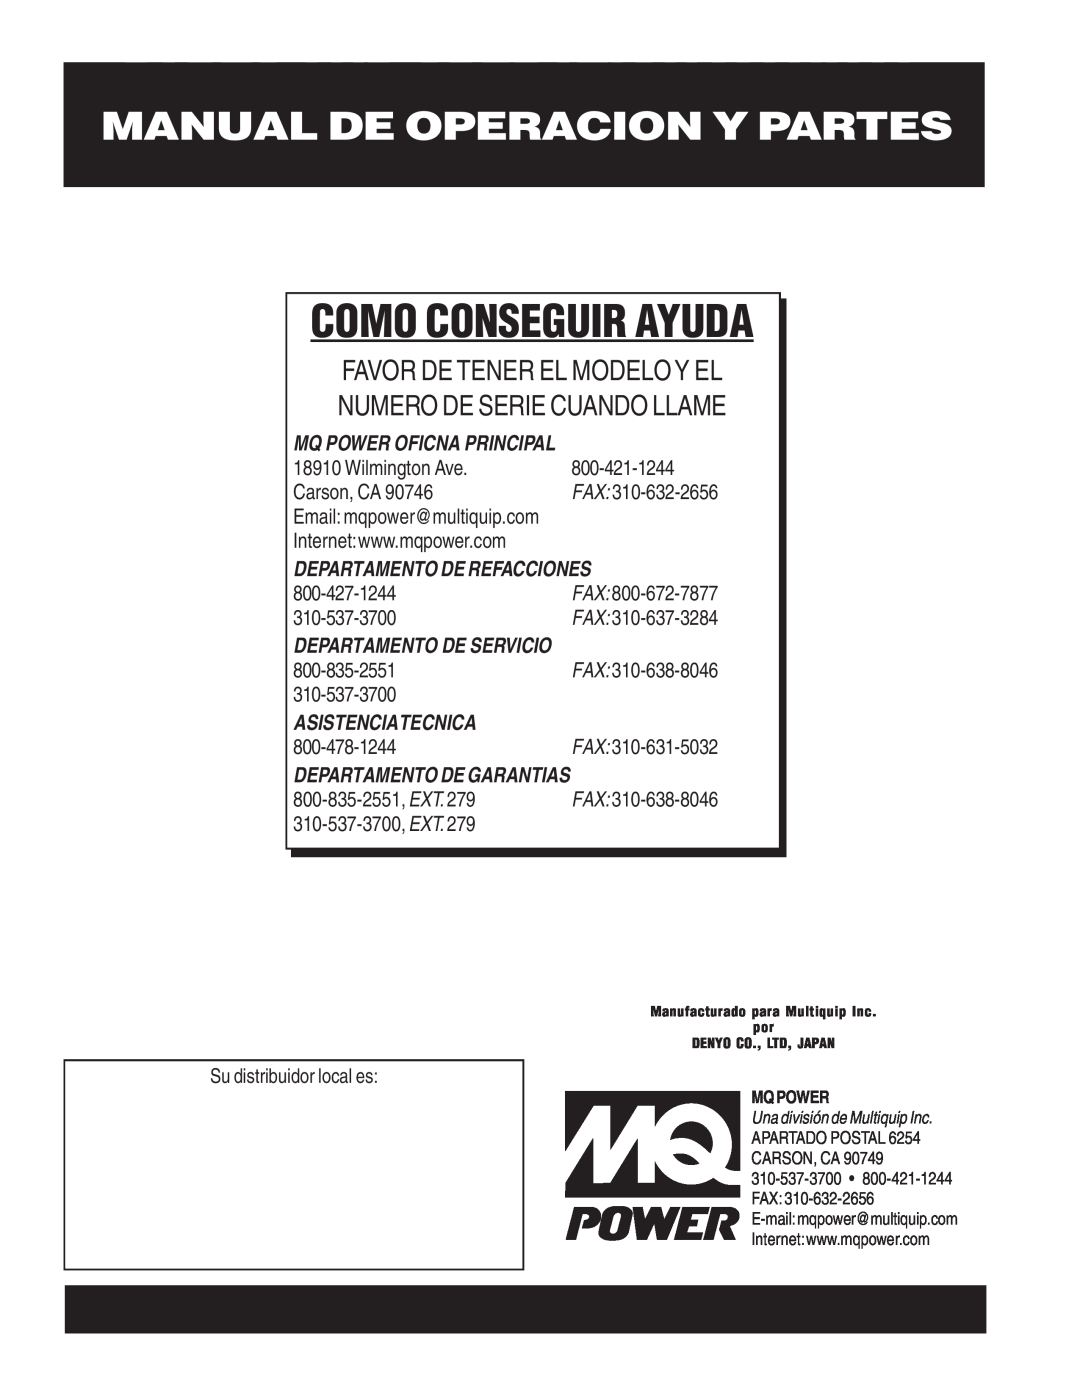 Multiquip DCA-400SSV Como Conseguir Ayuda, Manual De Operacion Y Partes, Favor De Tener El Modeloy El, Wilmington Ave, Fax 